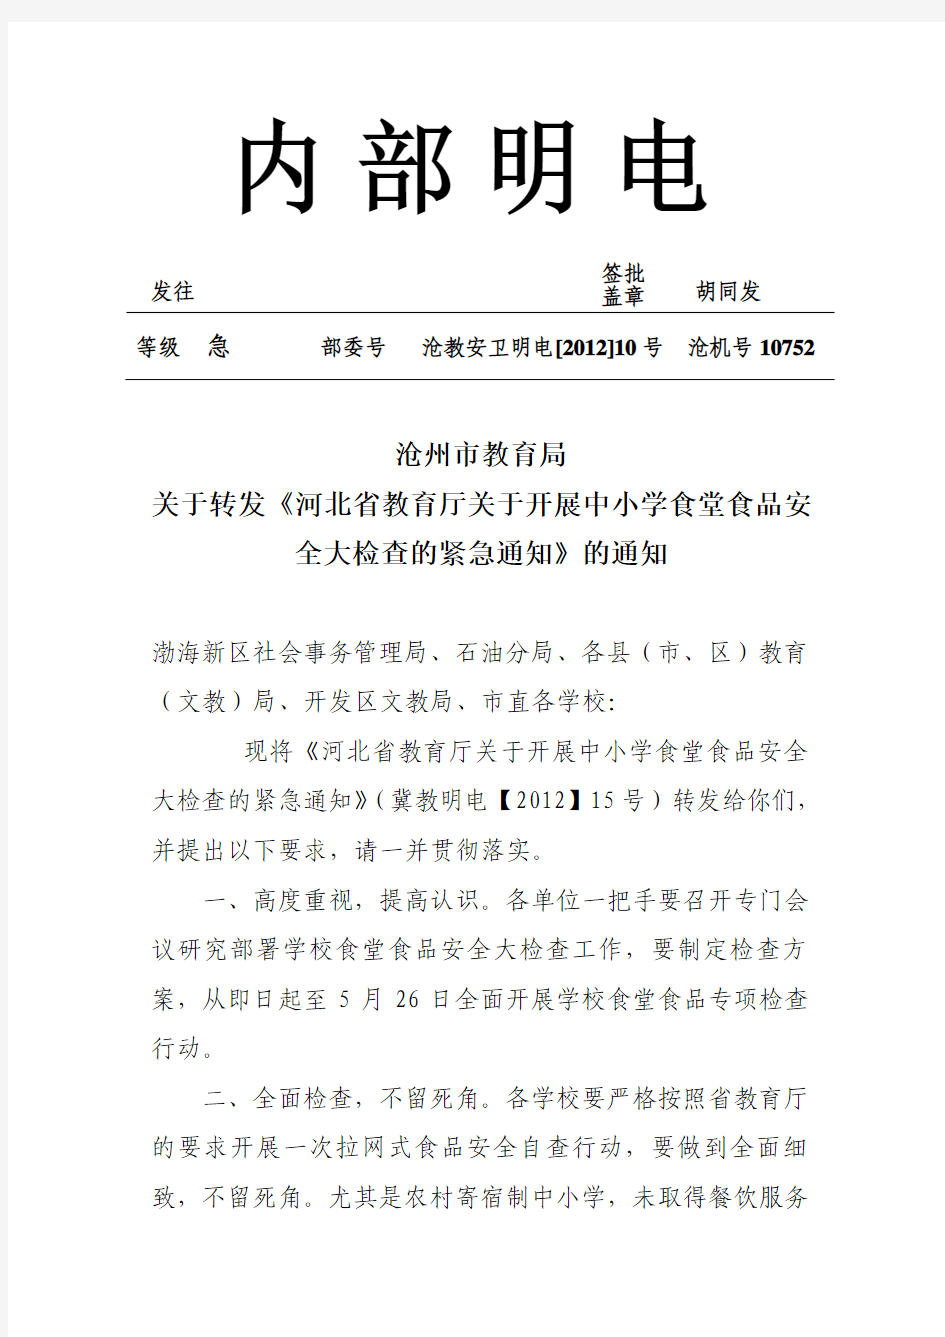 沧州市教育局关于转发《河北省教育厅关于开展中小学食堂食品安全大检查的紧急通知》的通知